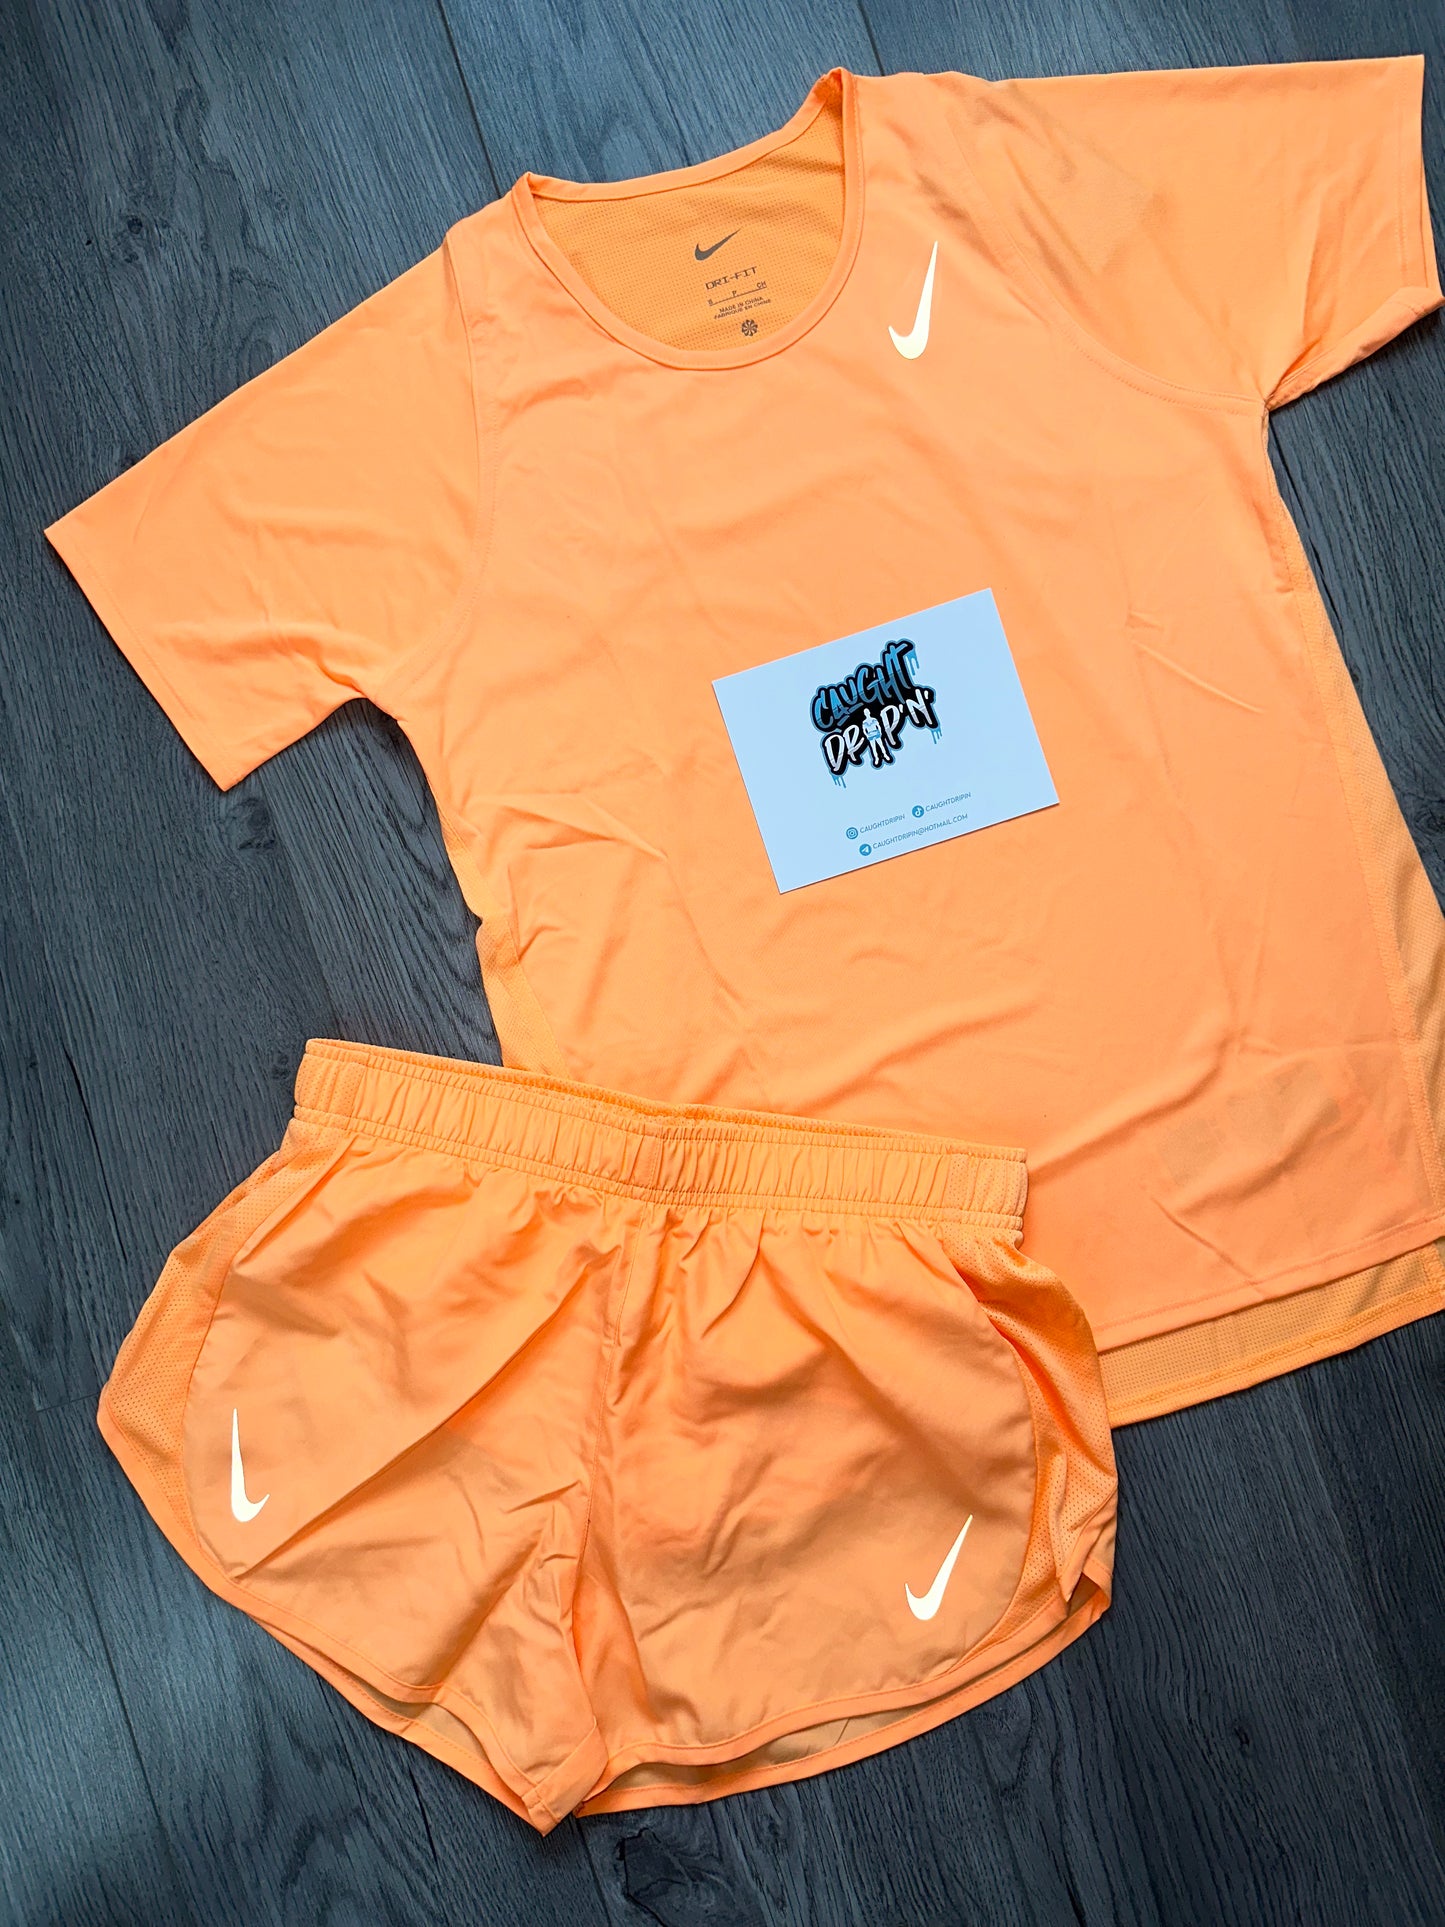 Women’s Nike Running Set Peach